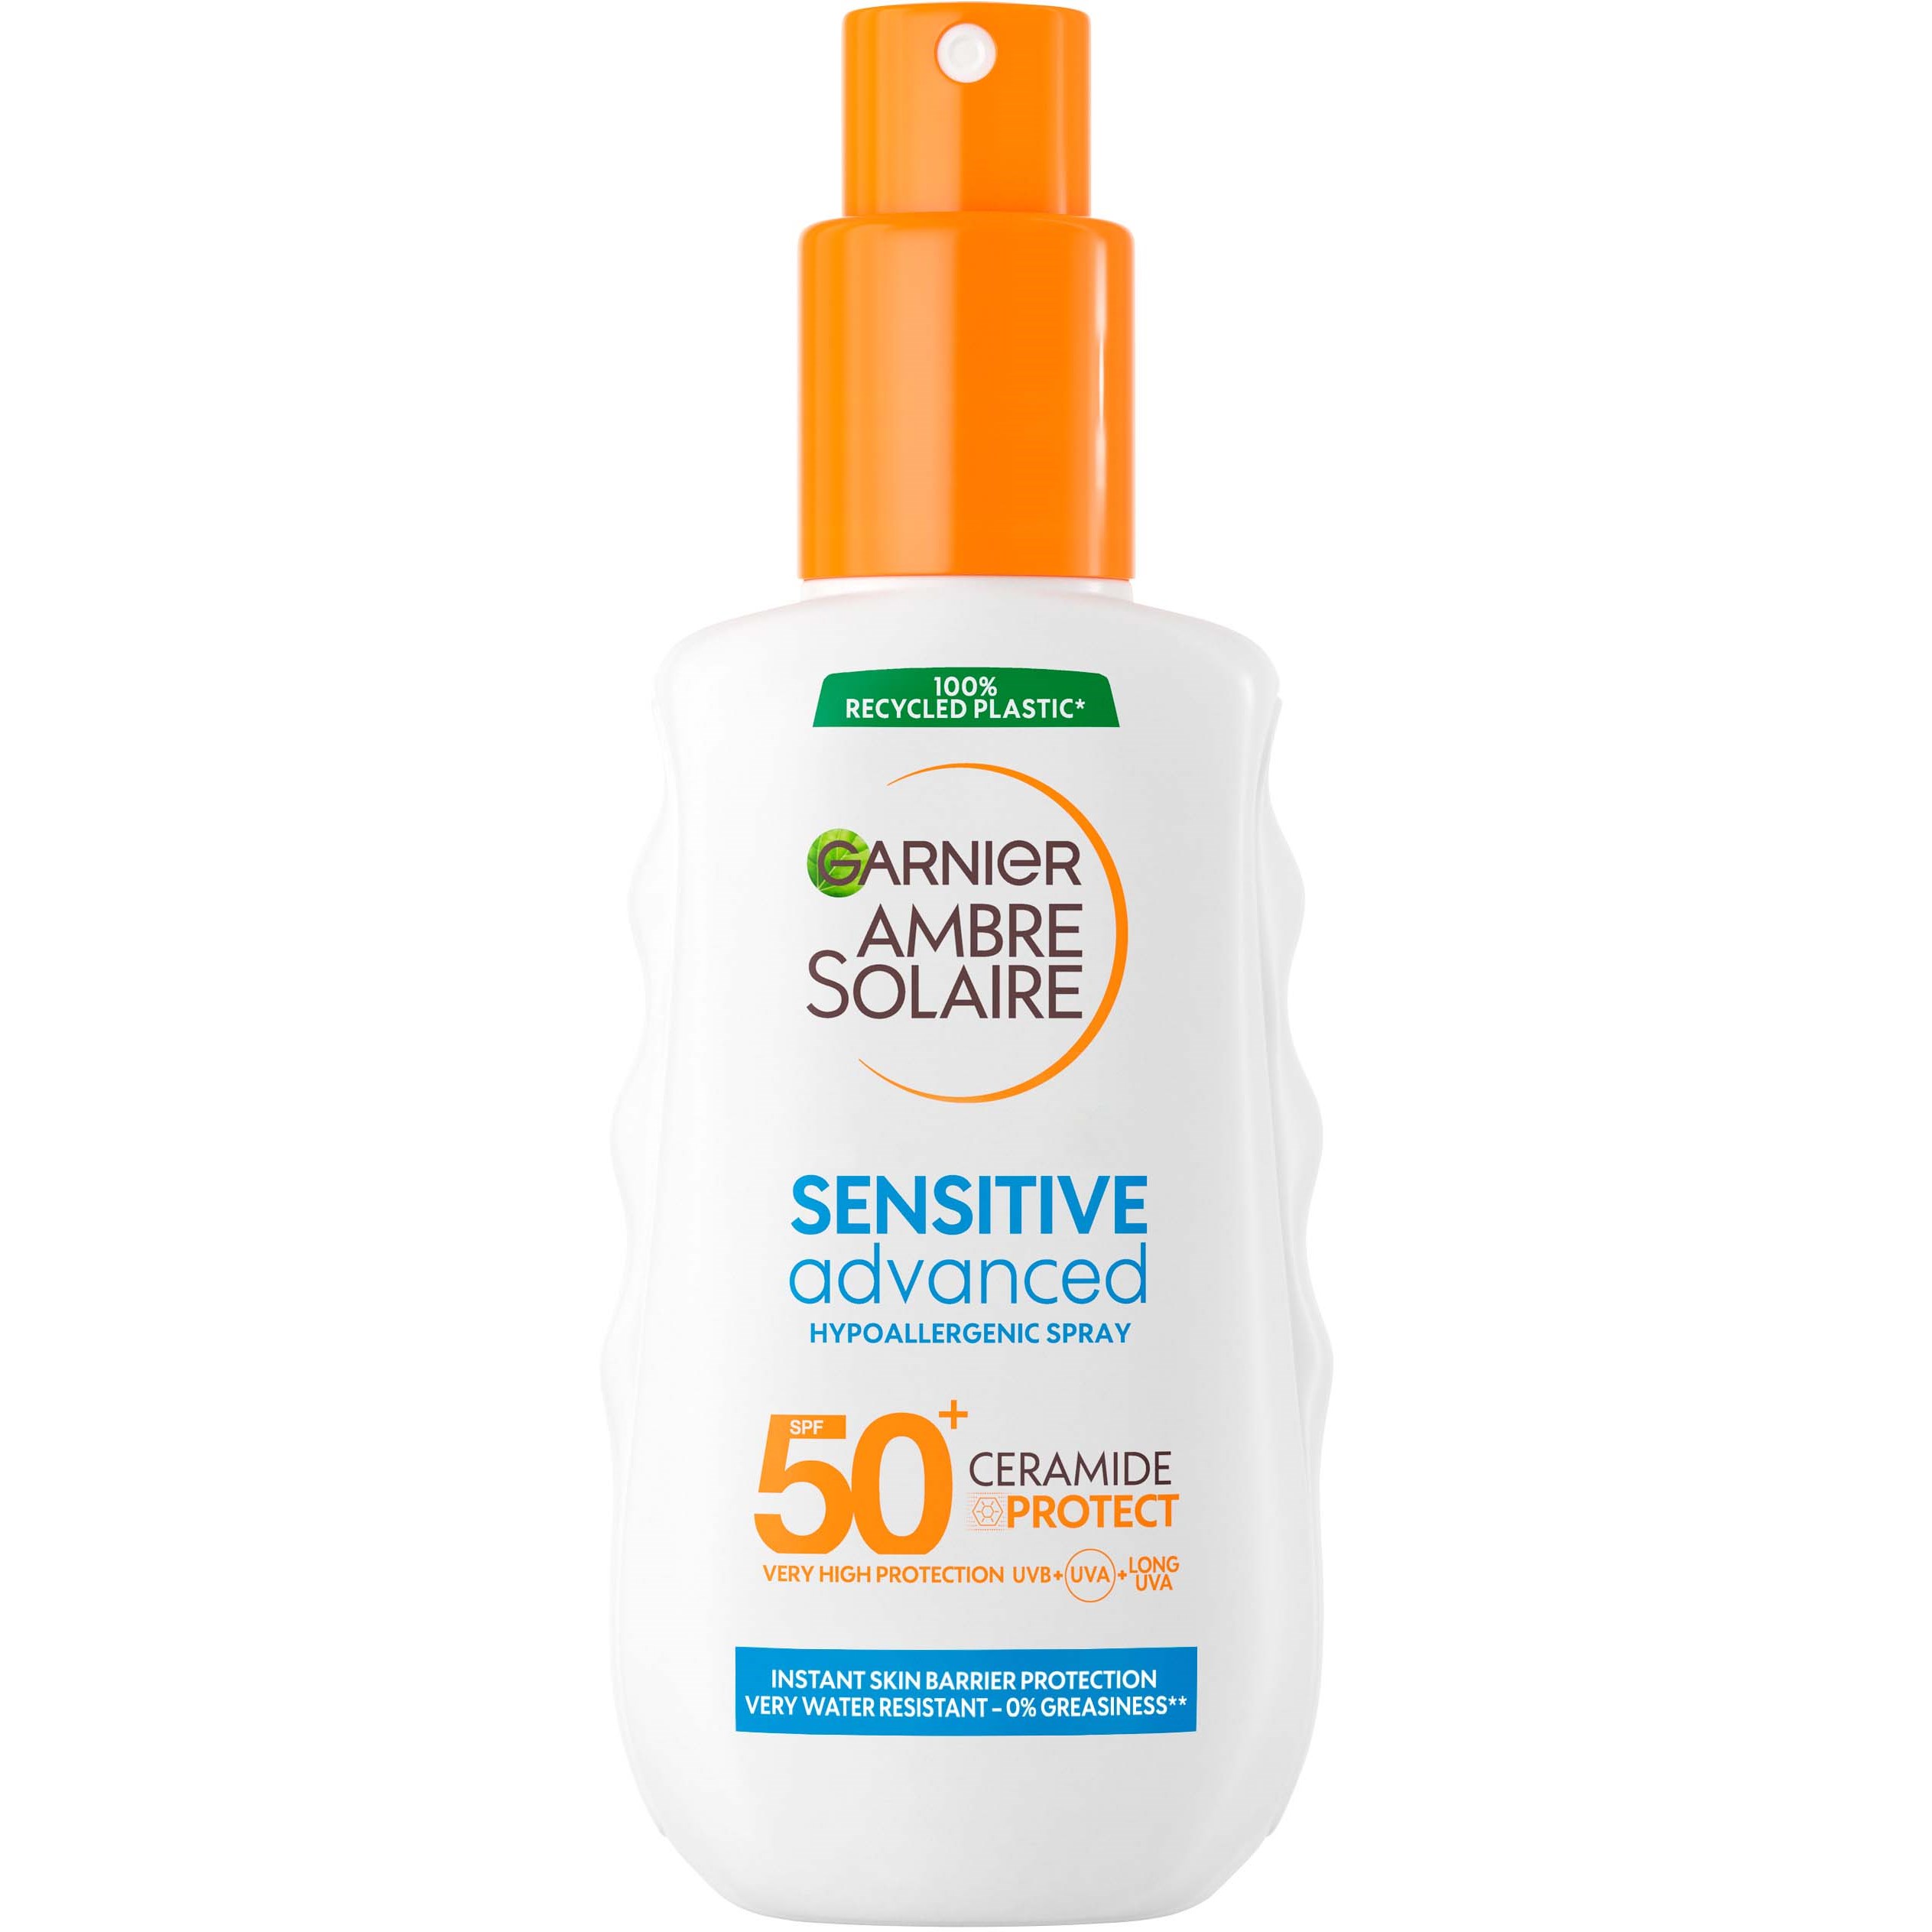 Garnier Ambre Solaire Sensitive Advanced Hypoallergenic Spray SPF50+ 1